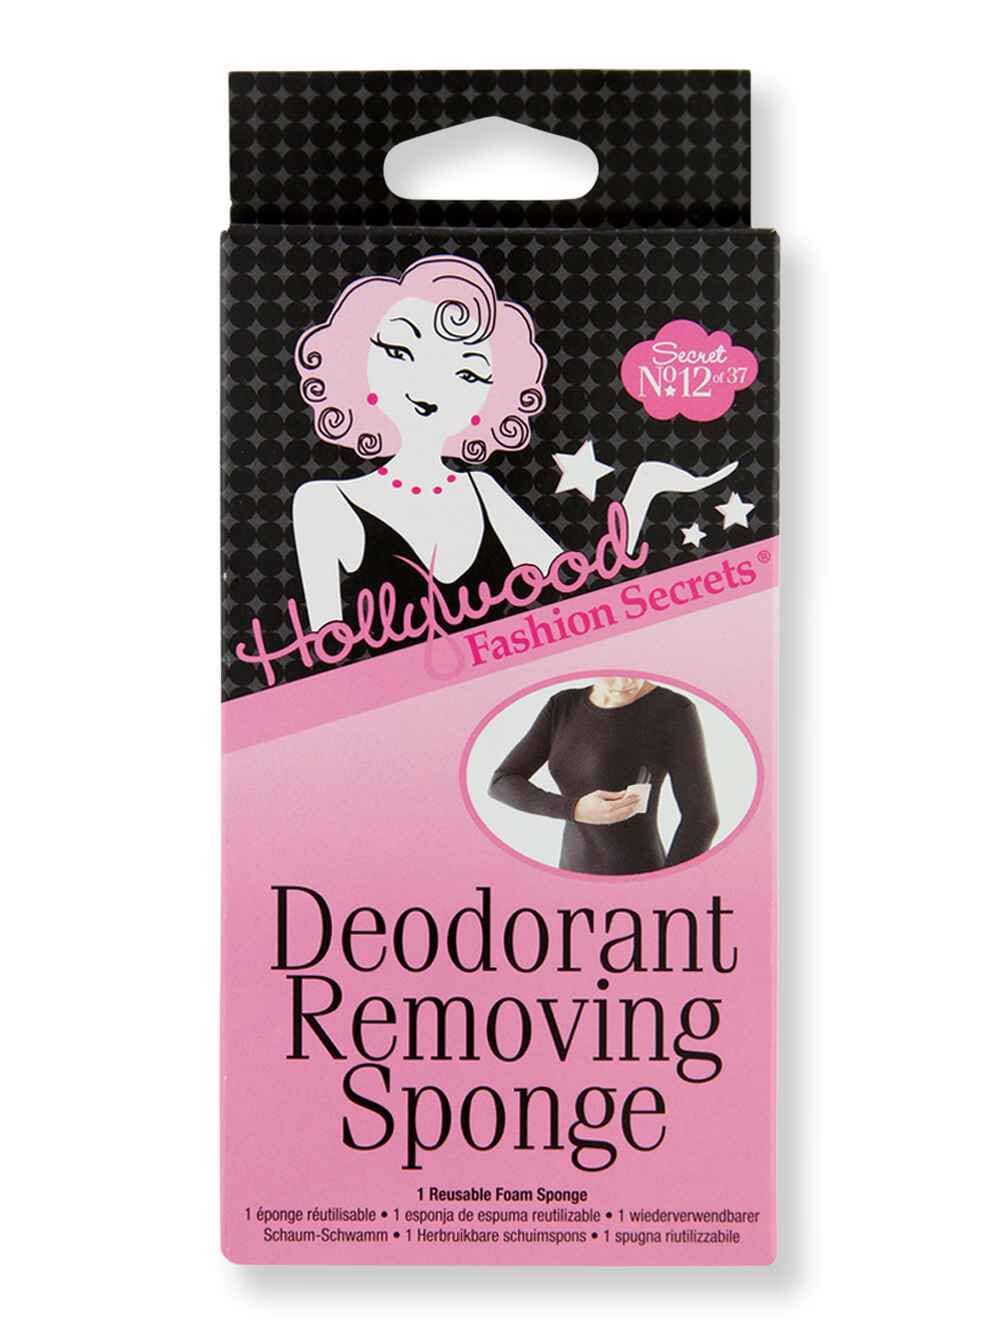 Hollywood Fashion Secrets Hollywood Fashion Secrets Deodorant Removing Sponge Apparel Accessories 